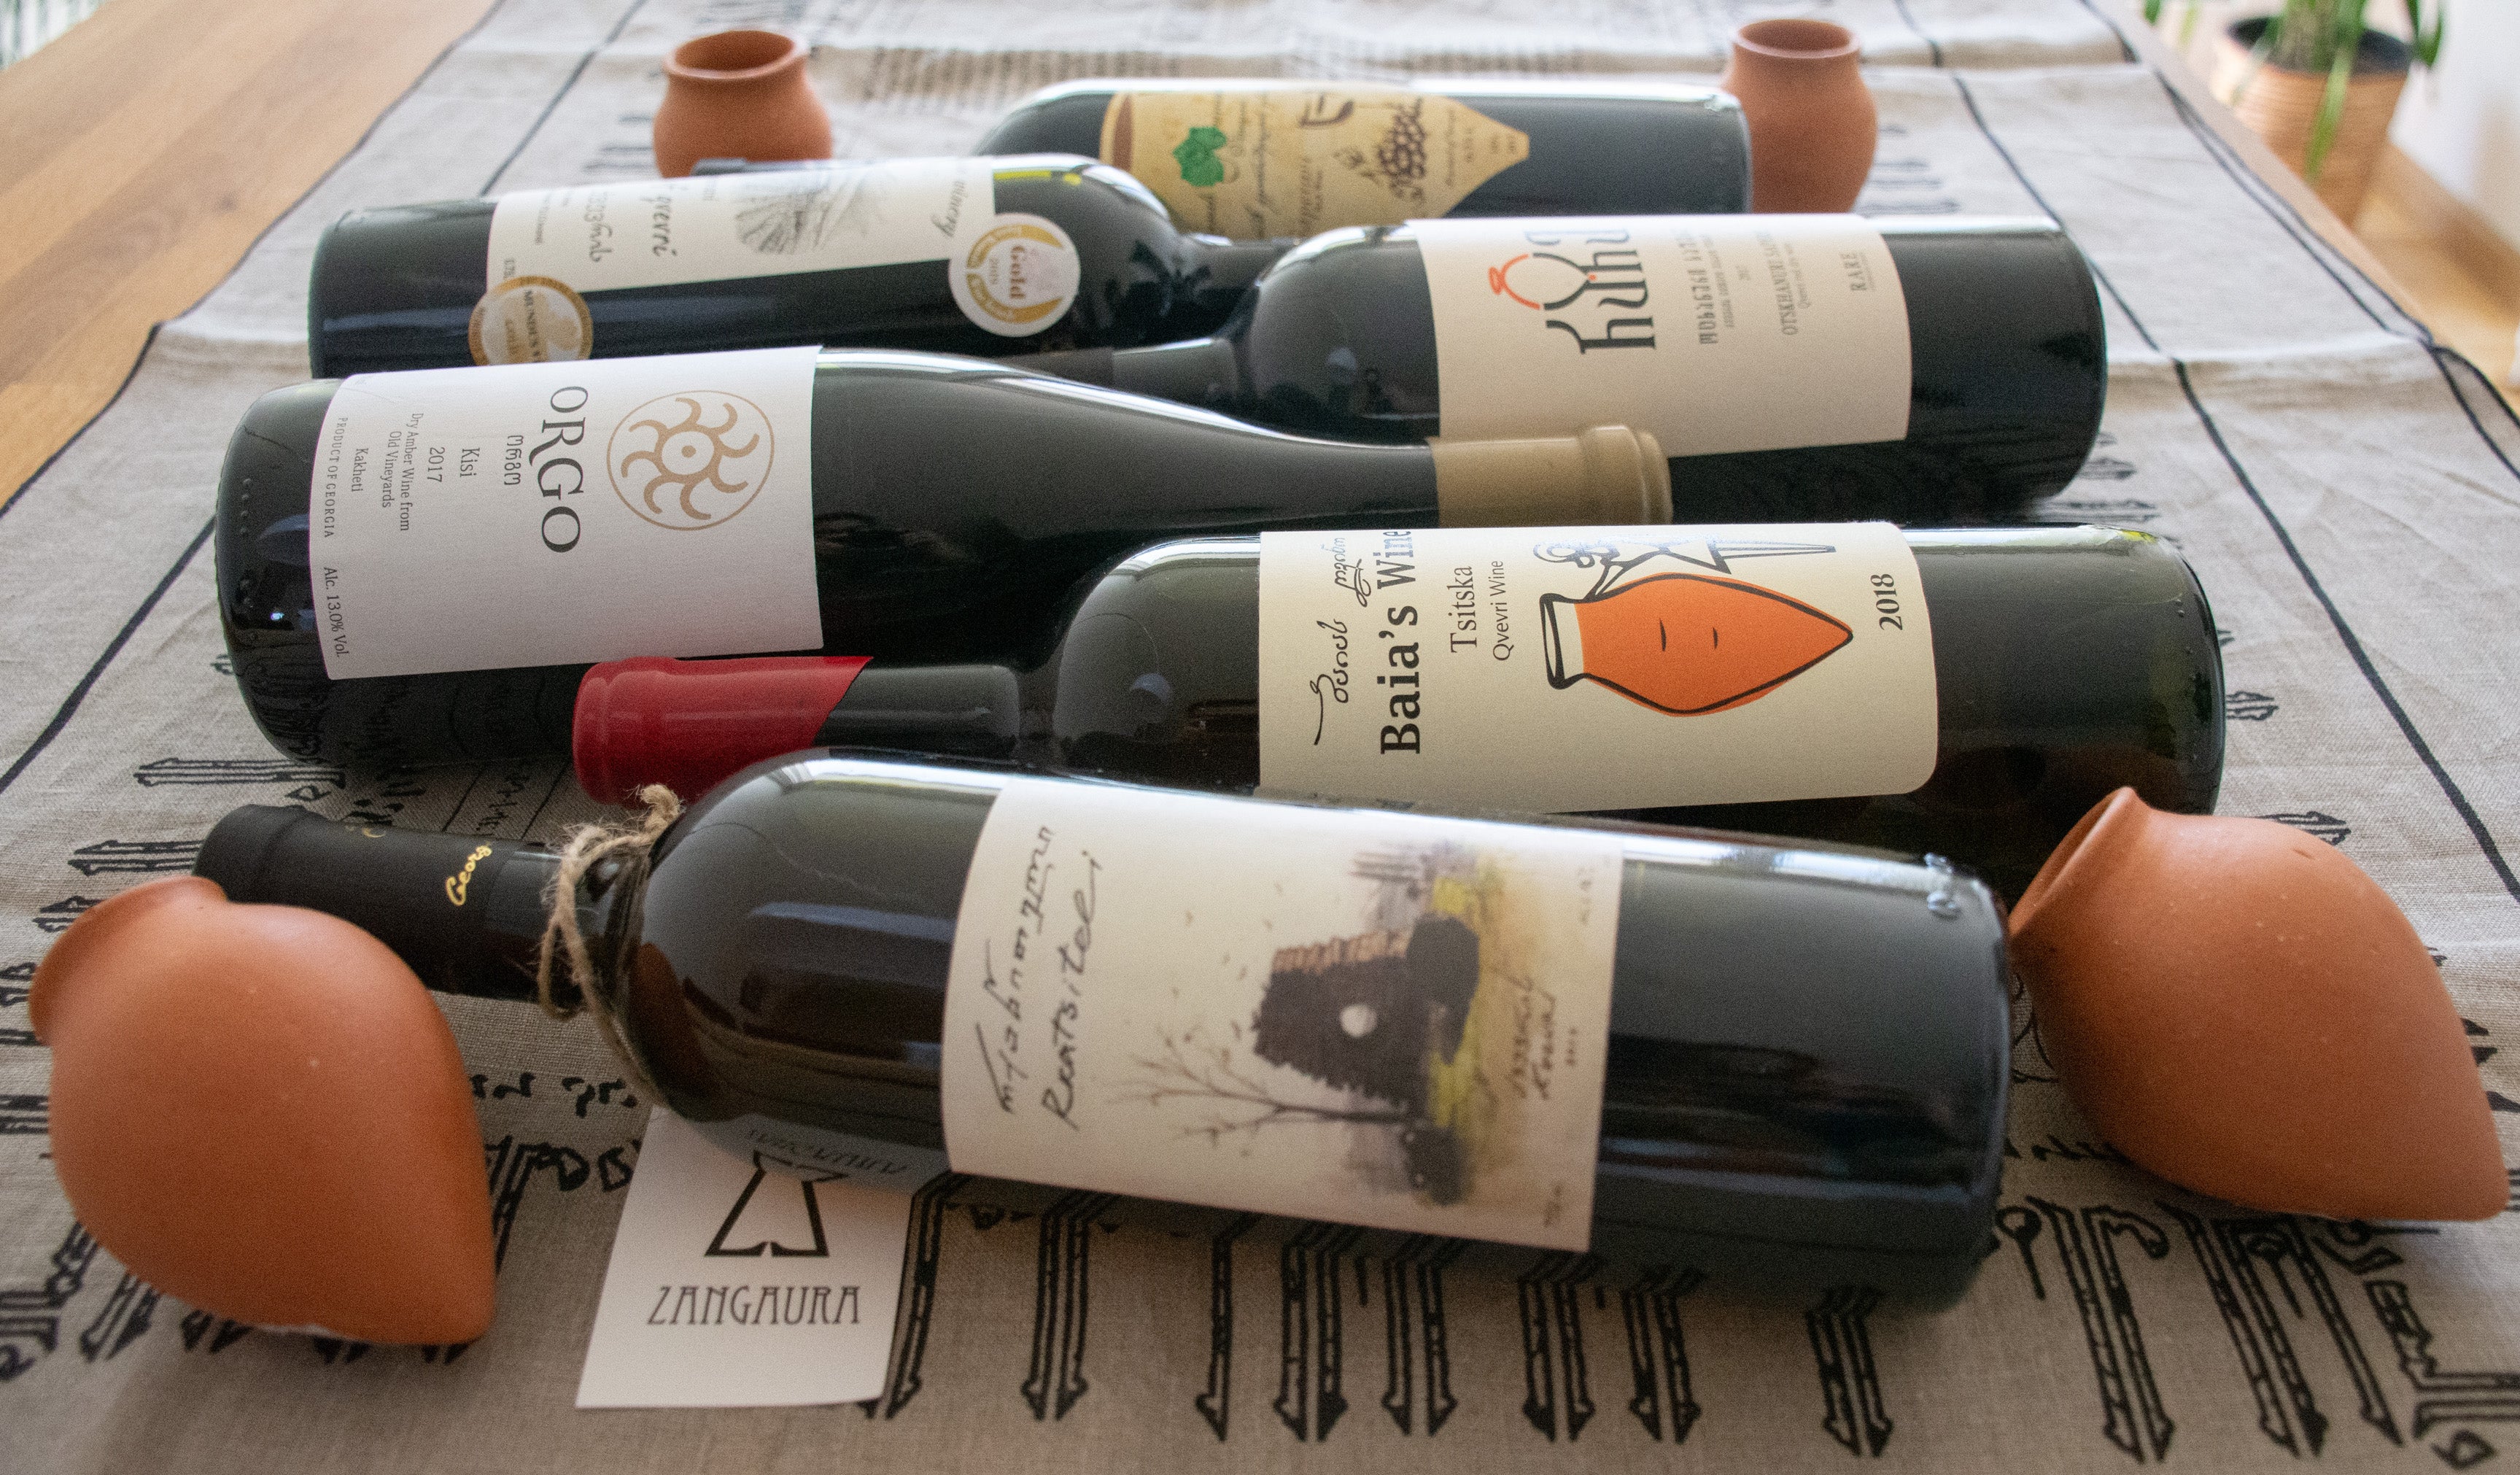 Collection de vins Qvevri 2020 - 3 bouteilles rouges et 3 bouteilles ambrées